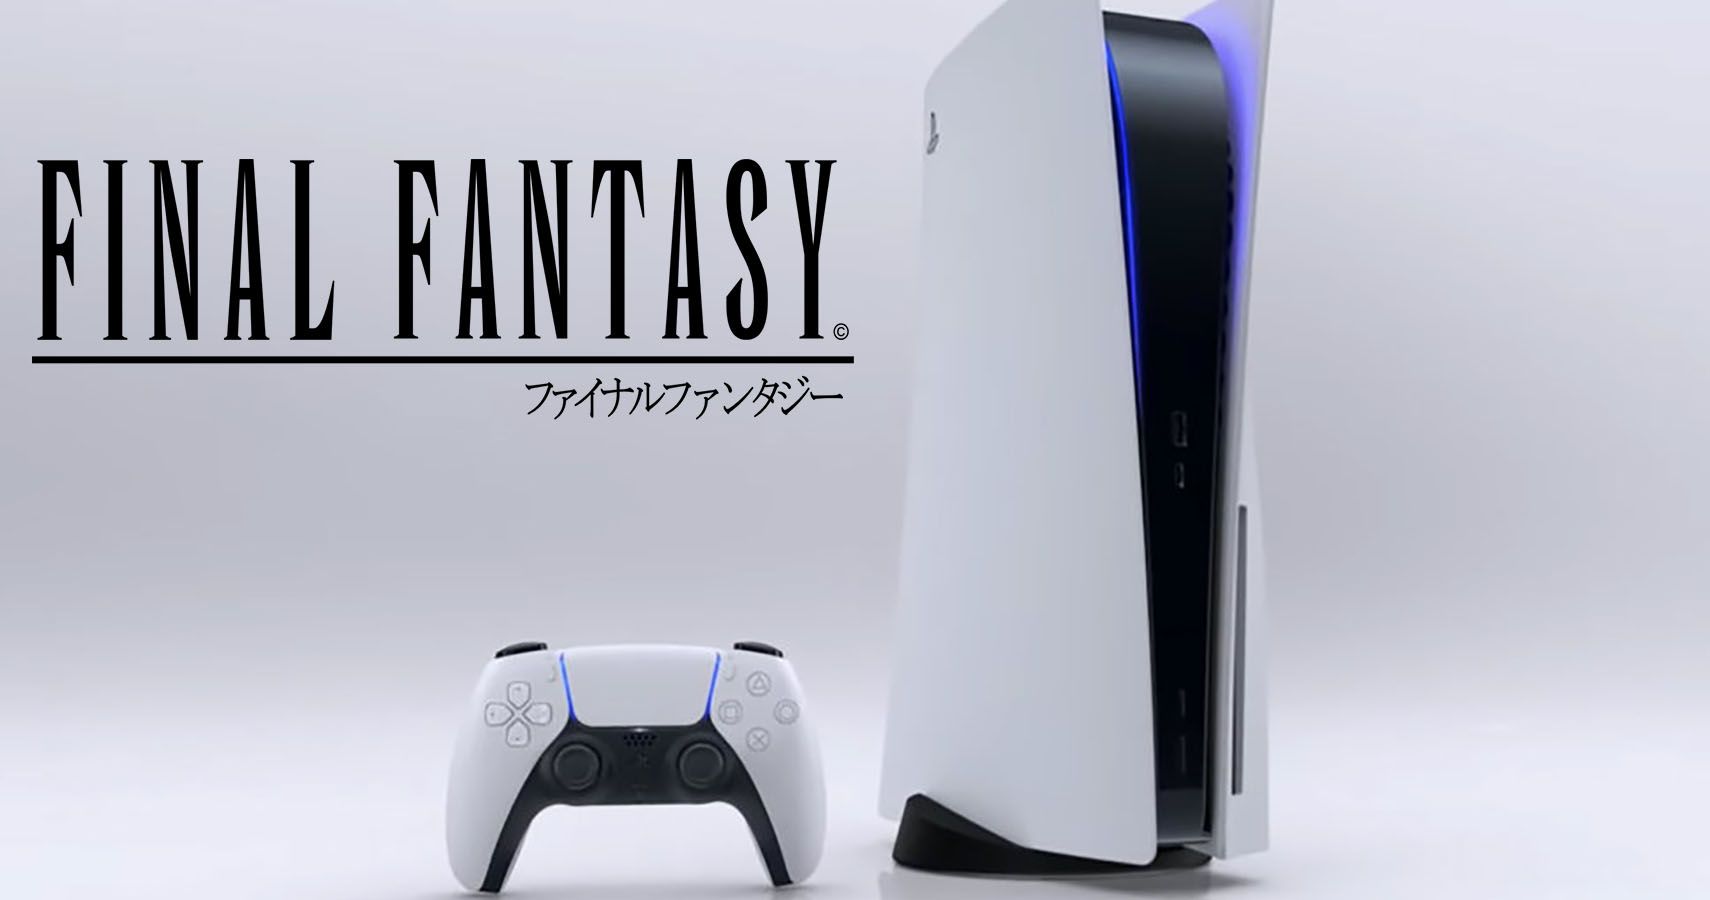 PlayStation 5 and Final Fantasy